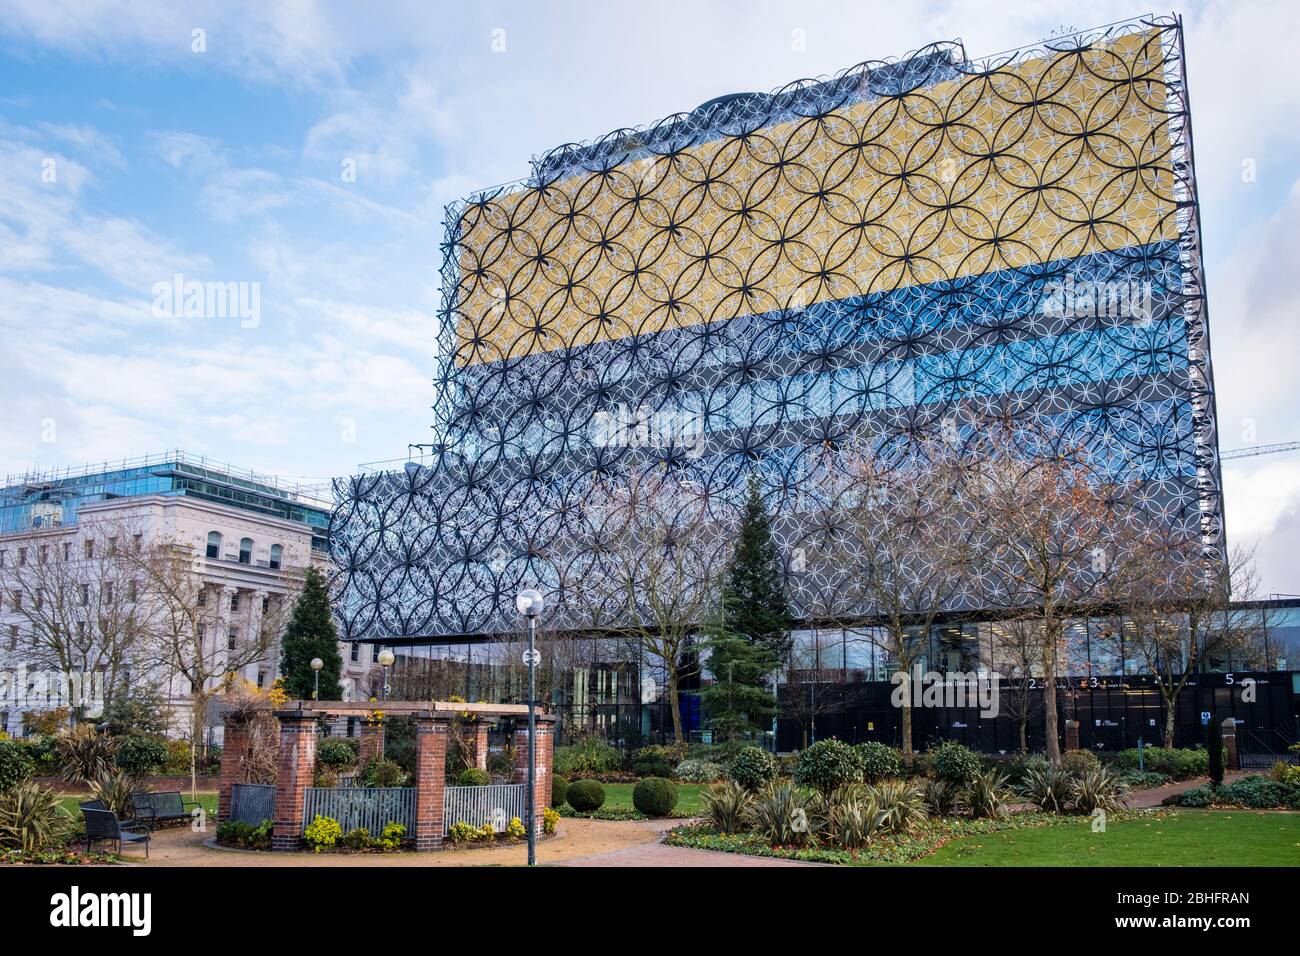 Bibliothèque de Birmingham des jardins du centre-ville, Birmingham, West Midlands, Angleterre, GB, Royaume-Uni Banque D'Images